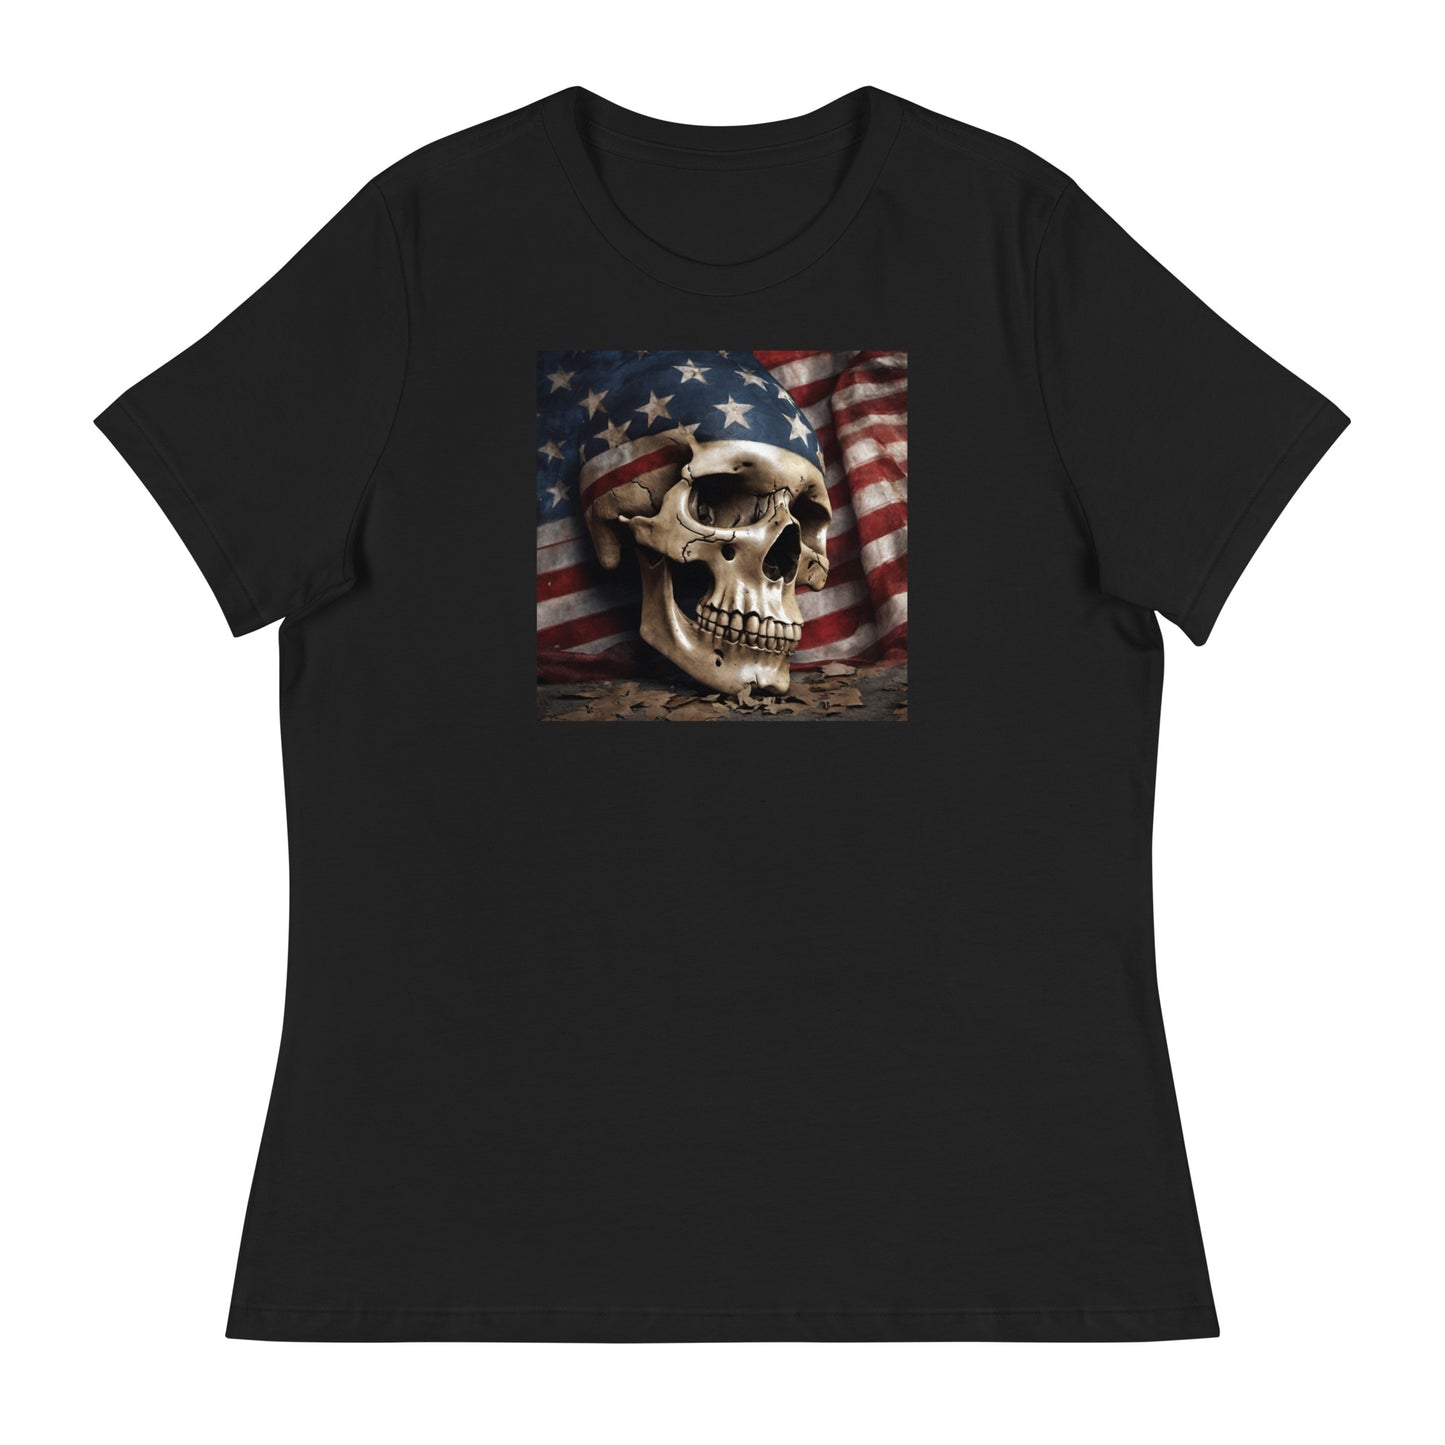 Skull and Flag Print Women's T-Shirt Black